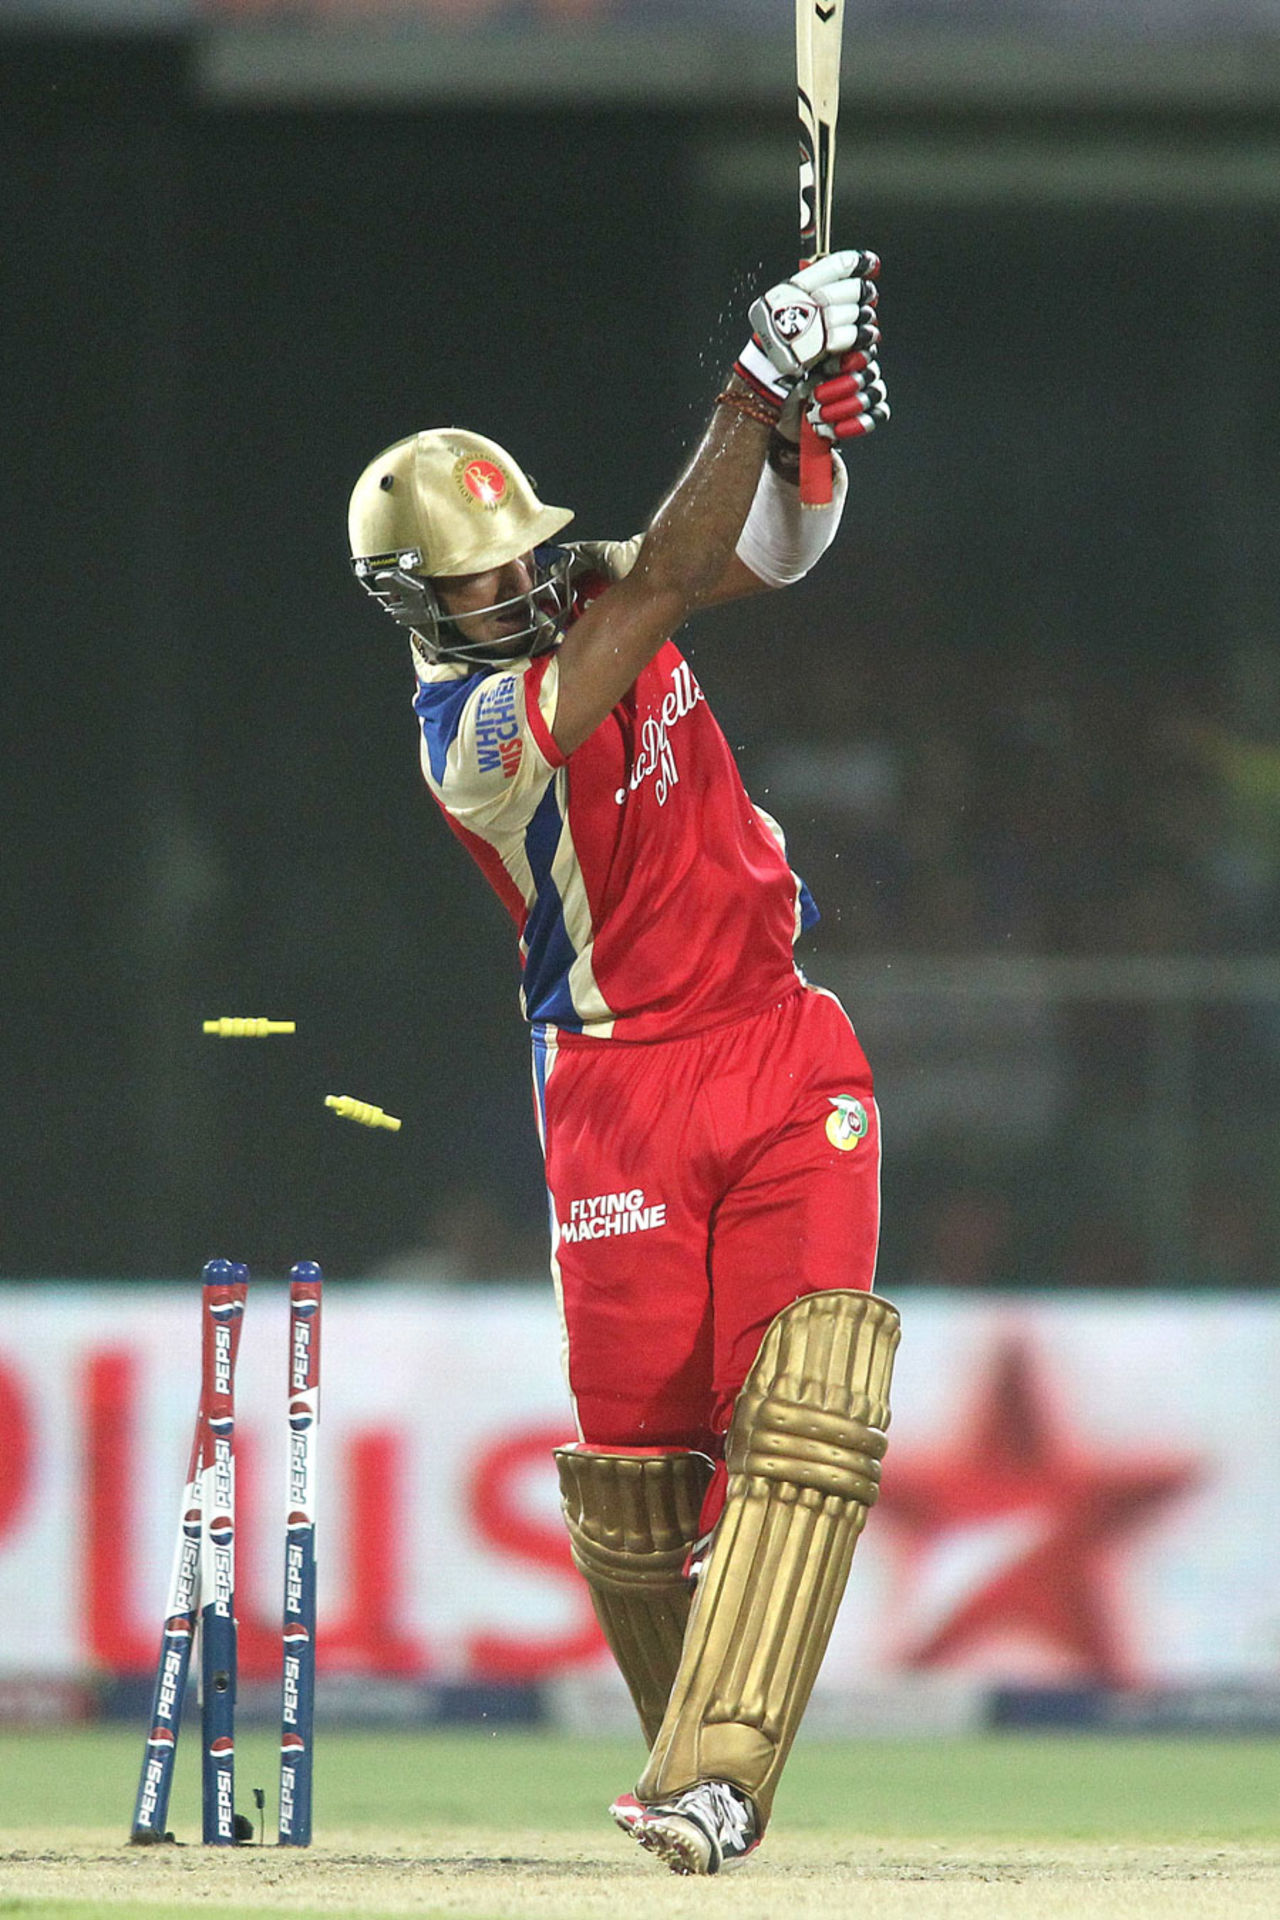 Cheteshwar Pujara is bowled by Siddarth Kaul, Delhi Daredevils v Royal Challengers Bangalore, IPL 2013, Delhi, May 10, 2013